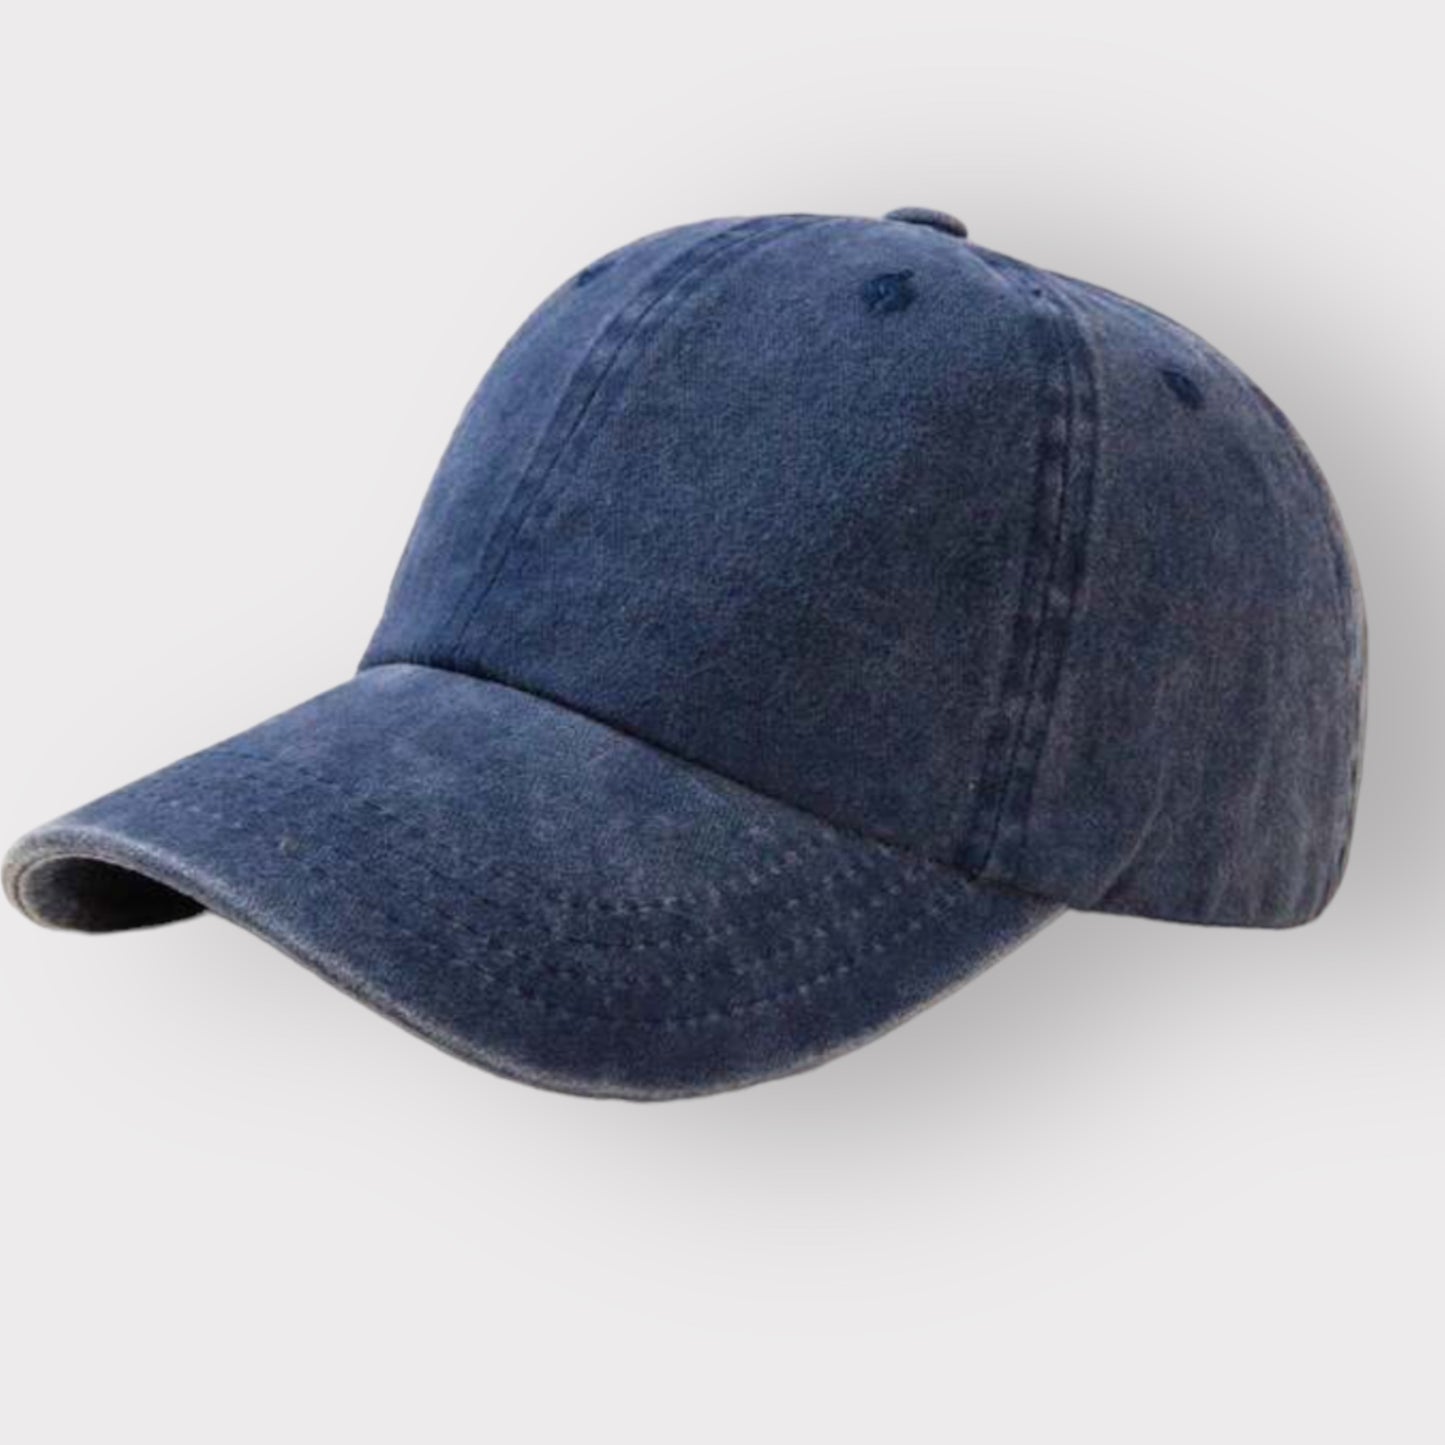 ponytail hole baseball style cap - blue